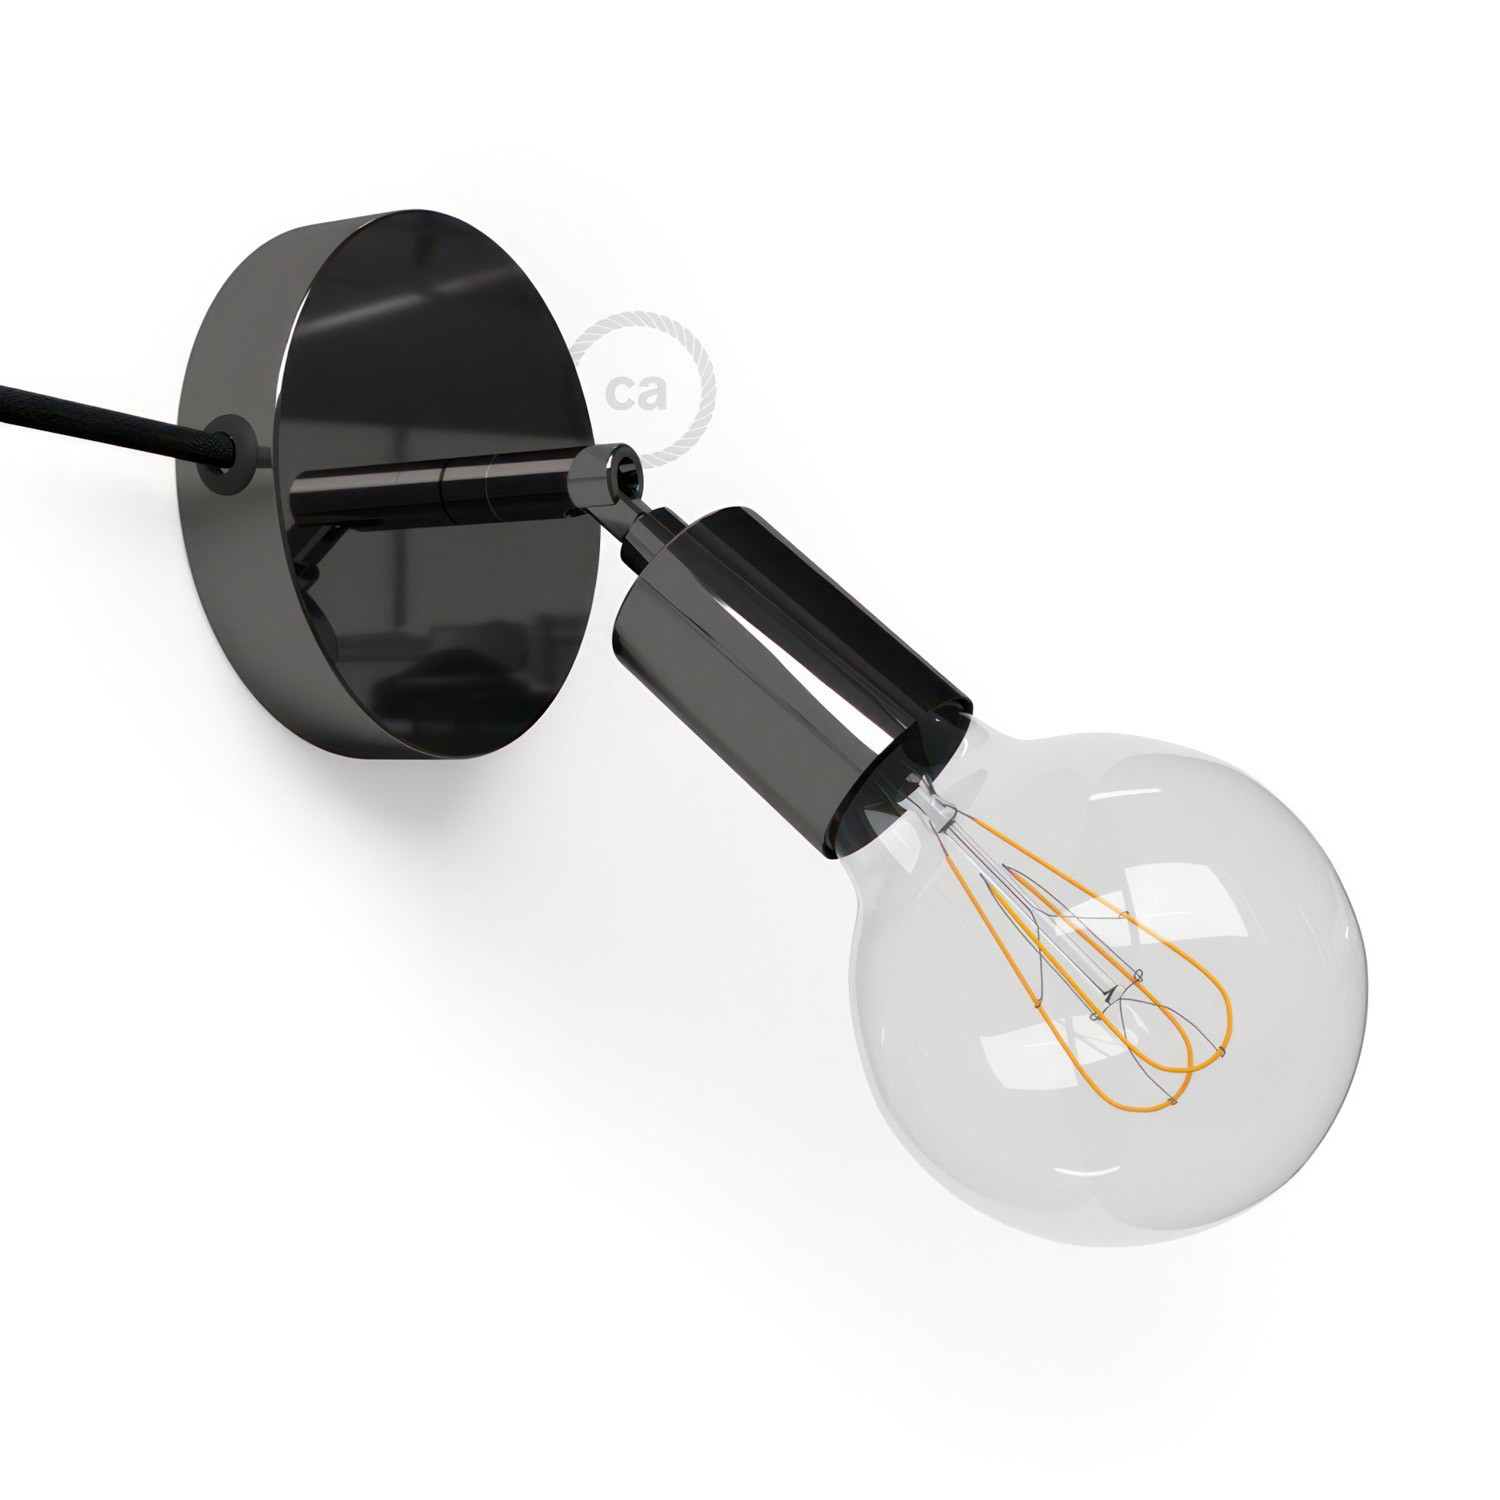 Spostaluce Metallo 90°, zglobna lampa s tekstilnim kabelom i bočnim rupama